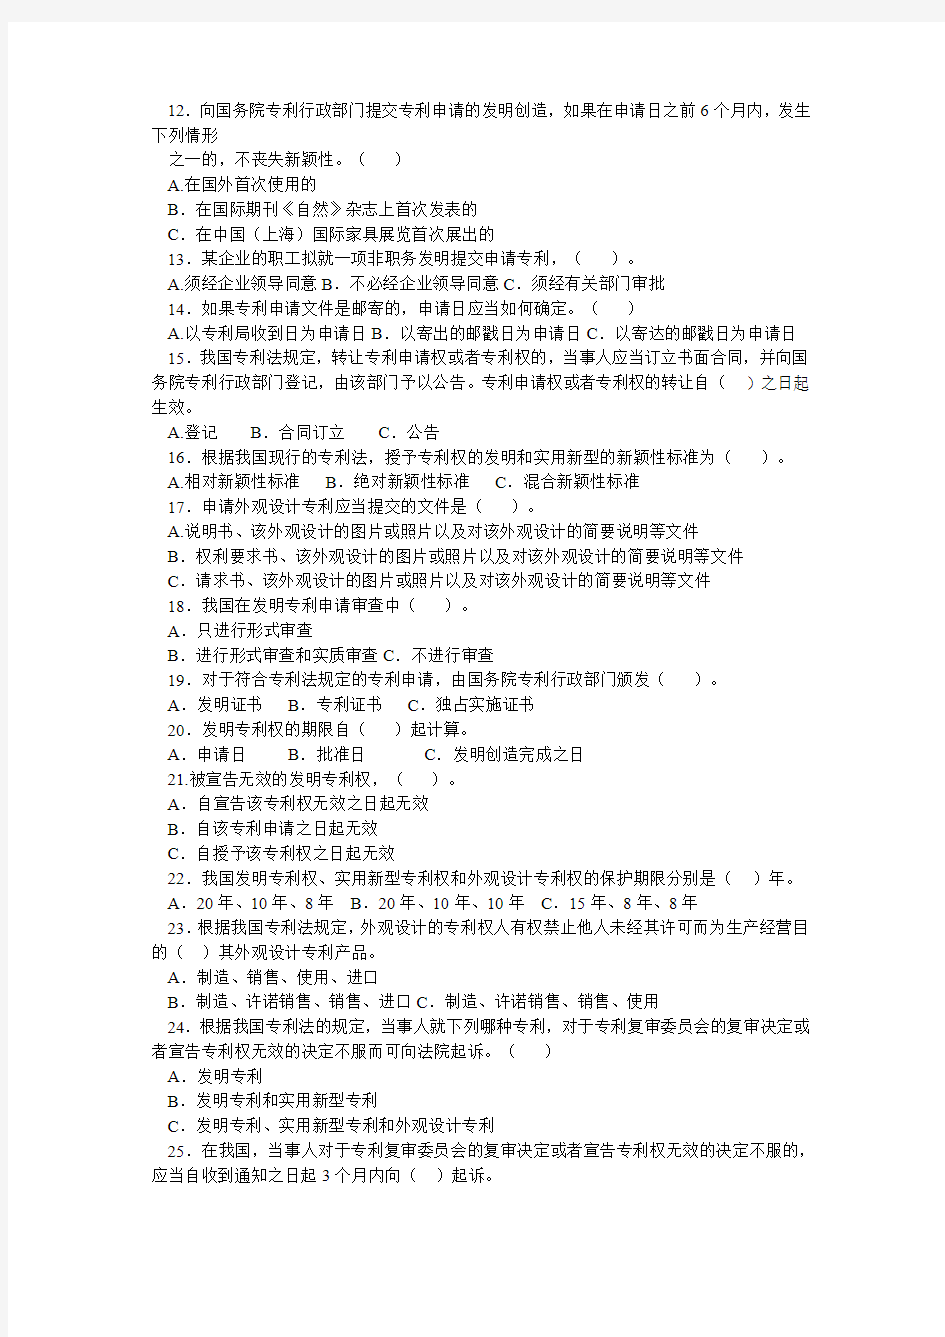 2013中国公众知识产权知识竞赛试题范文